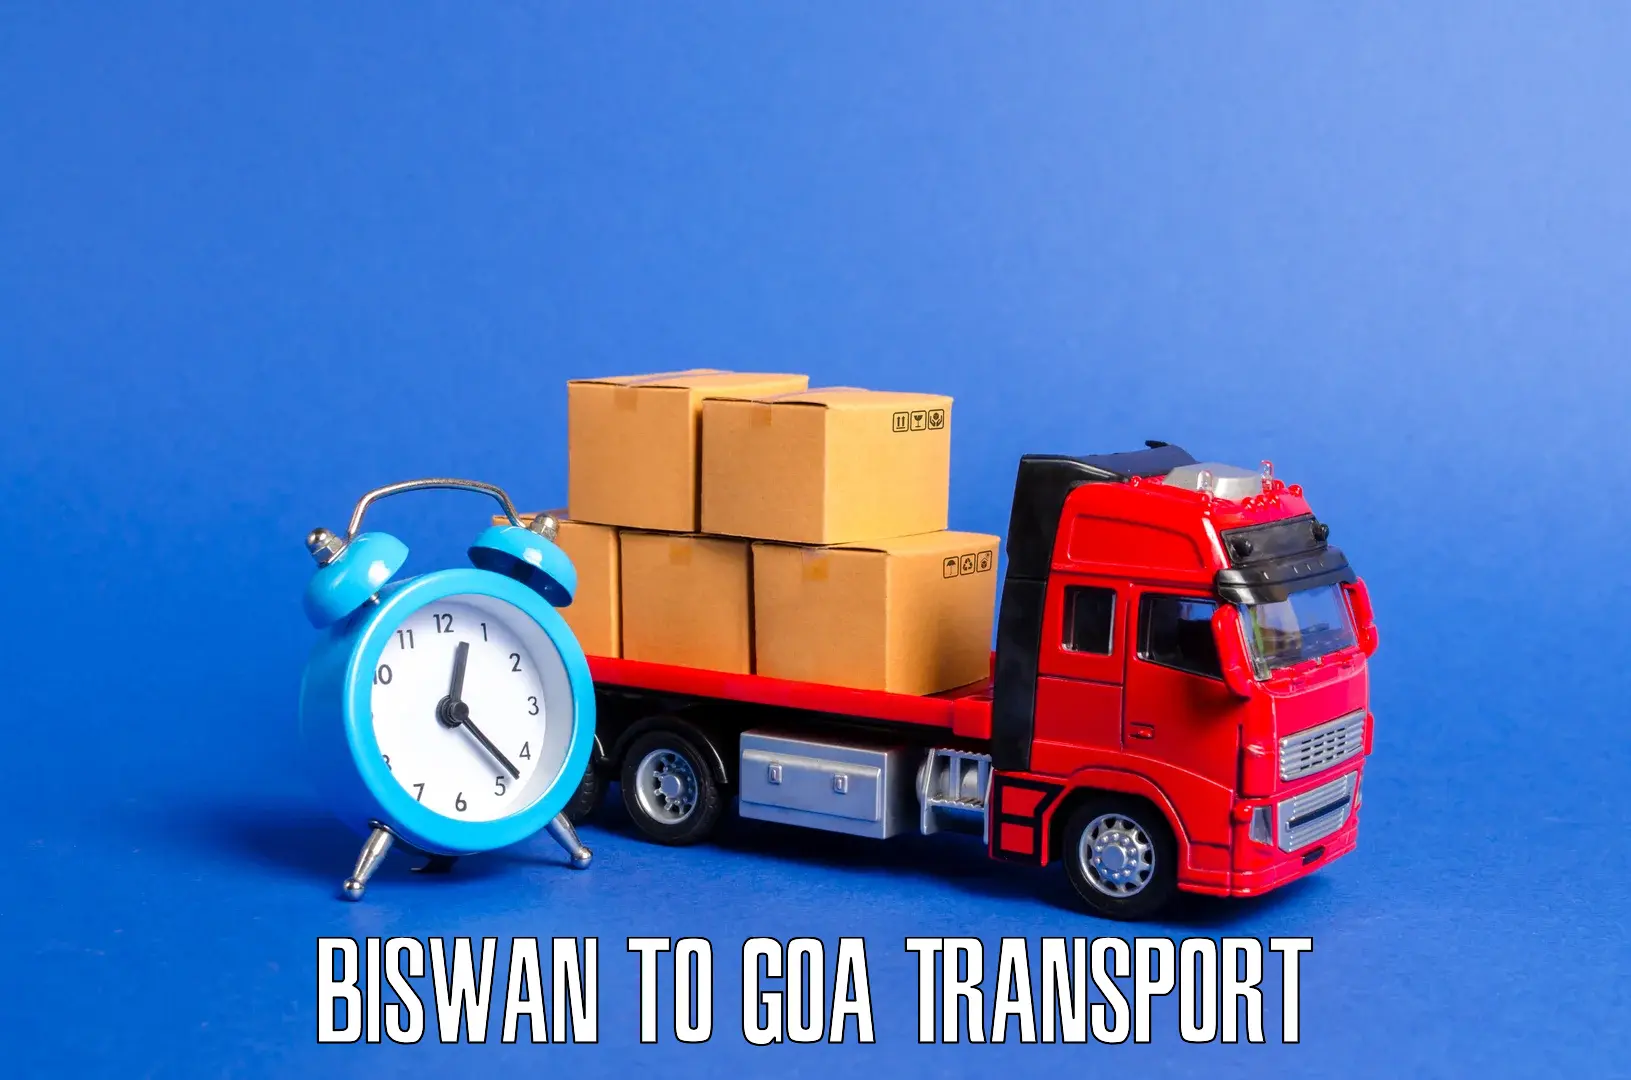 Cargo train transport services in Biswan to Bicholim